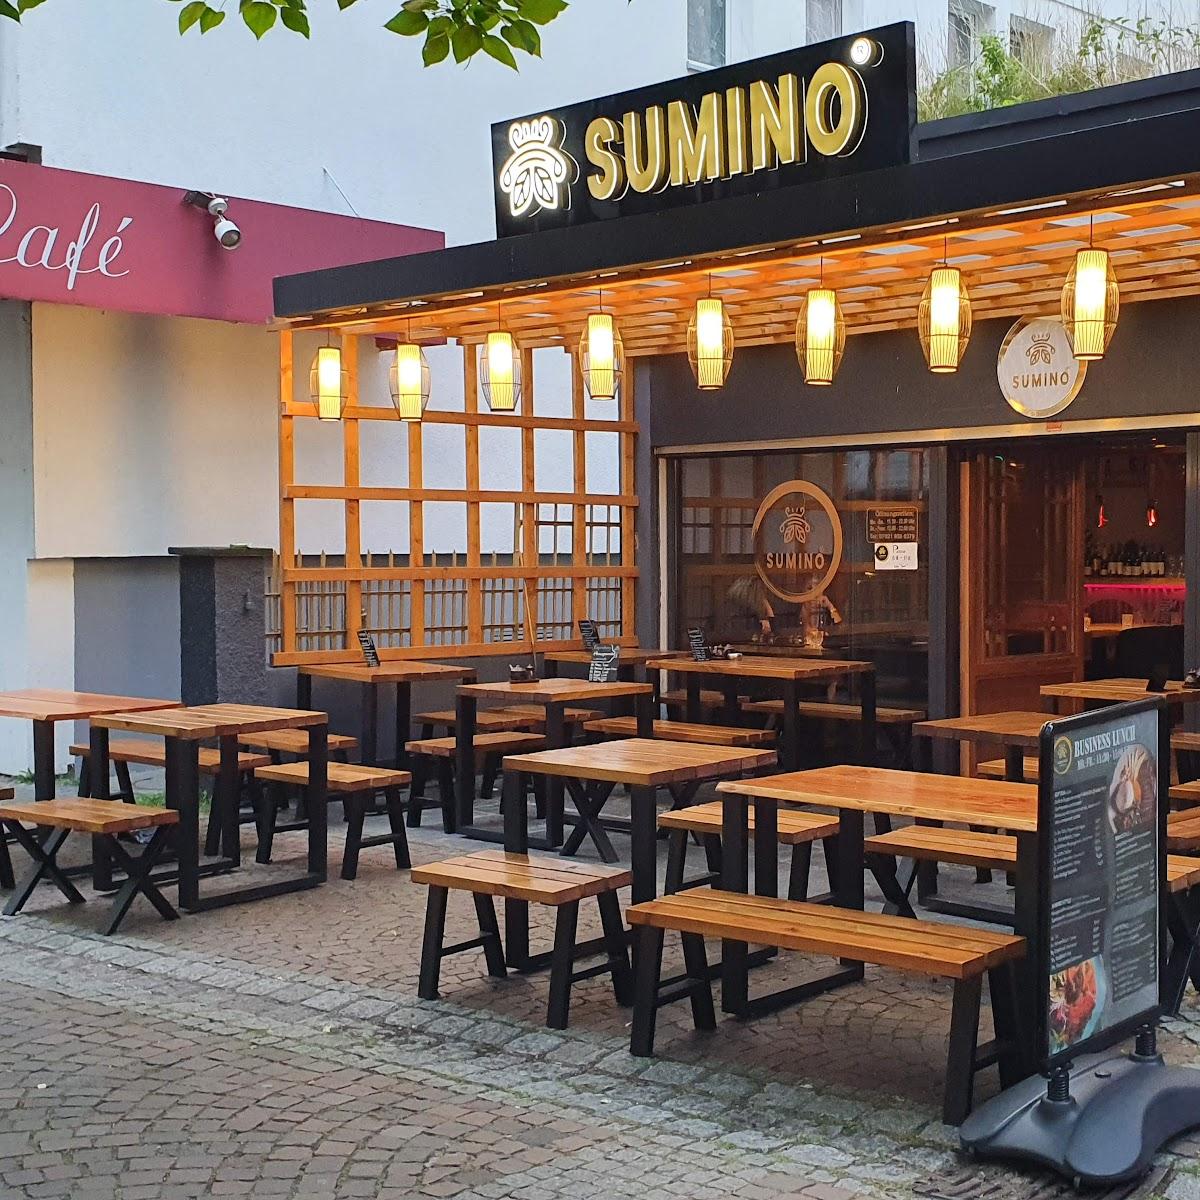 Restaurant "Sumino Kirchheim" in Kirchheim unter Teck